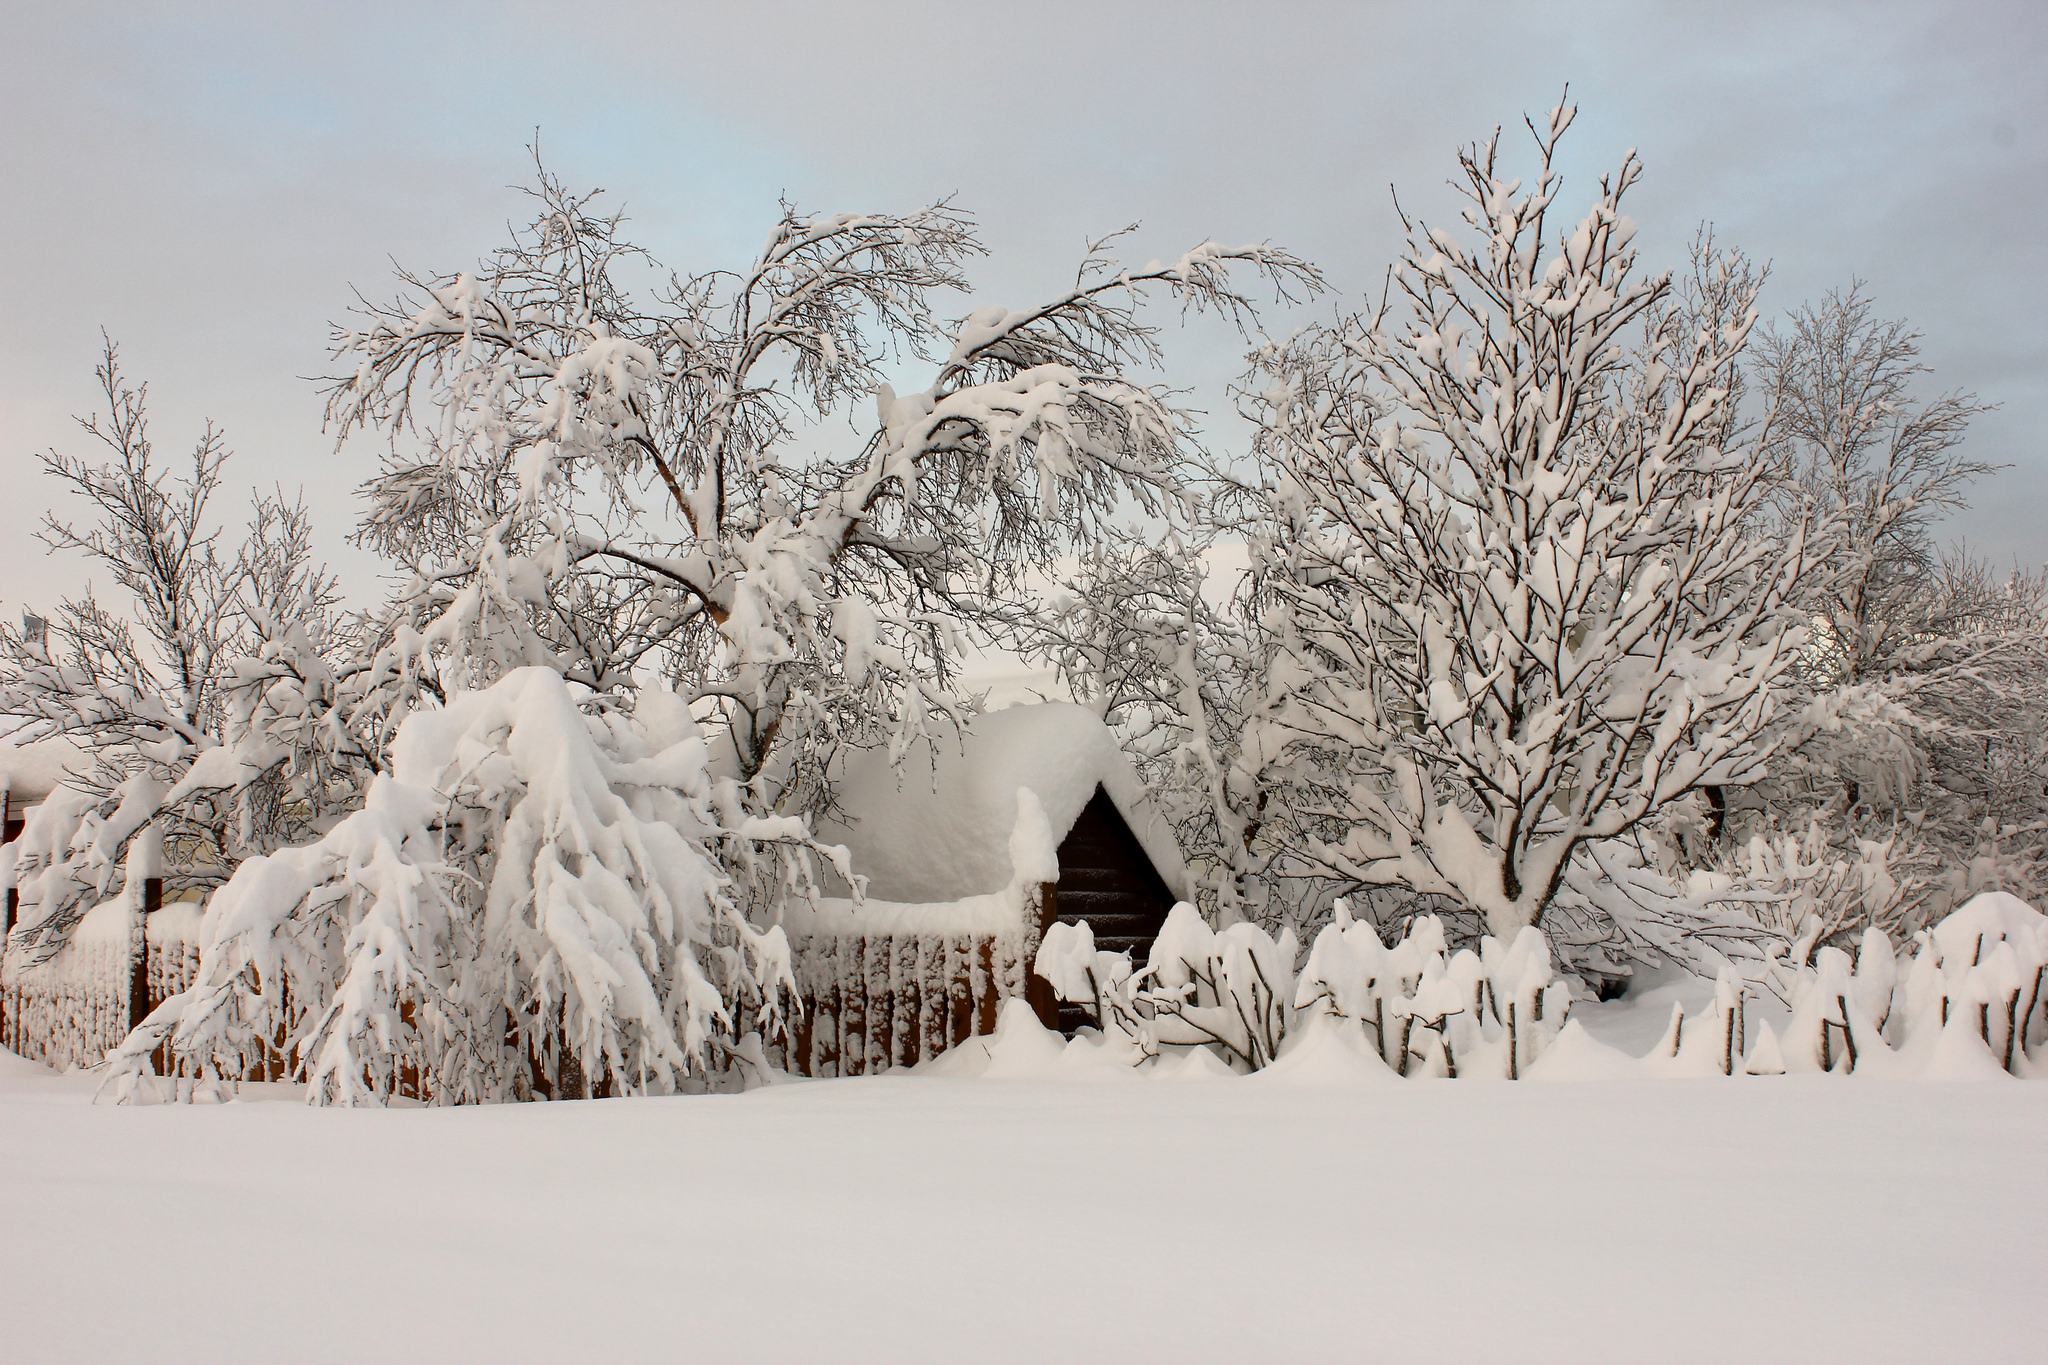 Скачать картинку Зима, Снег, Дерево, Кабина, Сделано Человеком в телефон бесплатно.